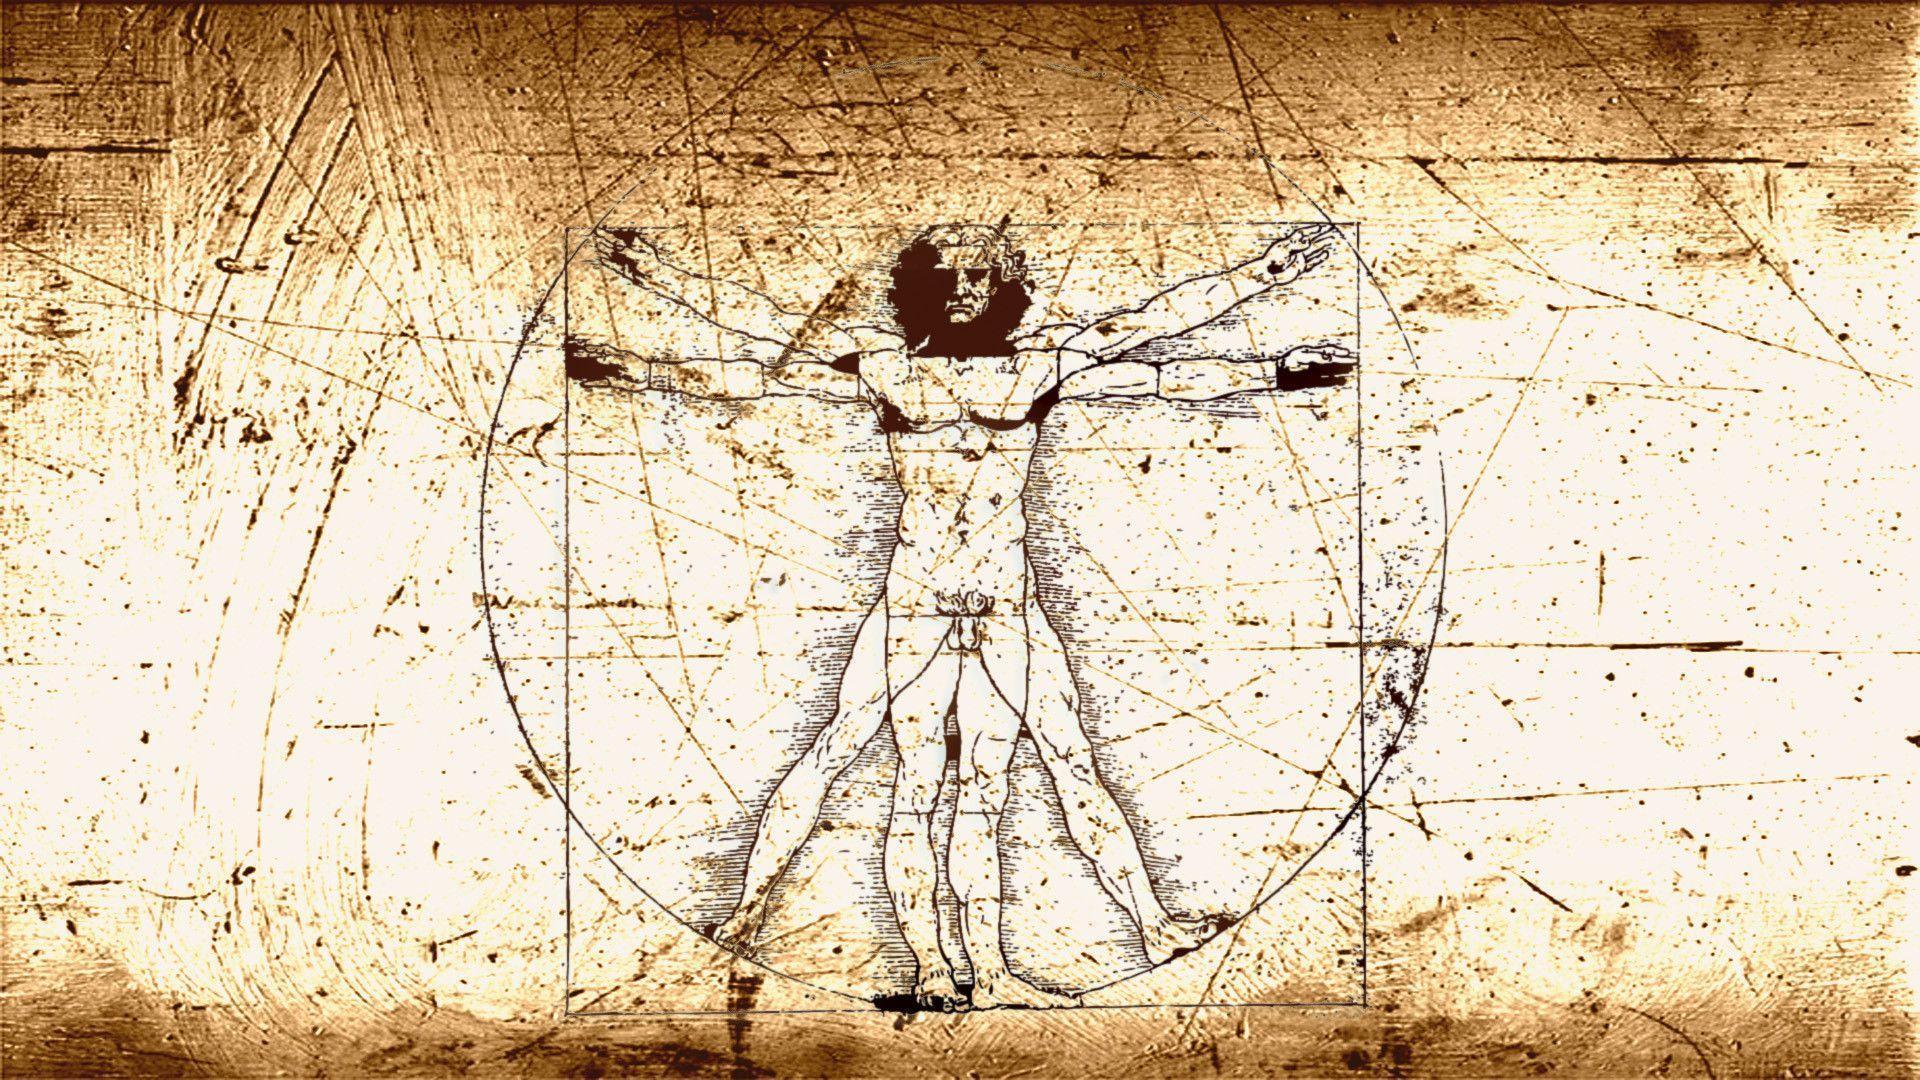 Leonardo da Vinci Drawings Image 31. hdwallpaper